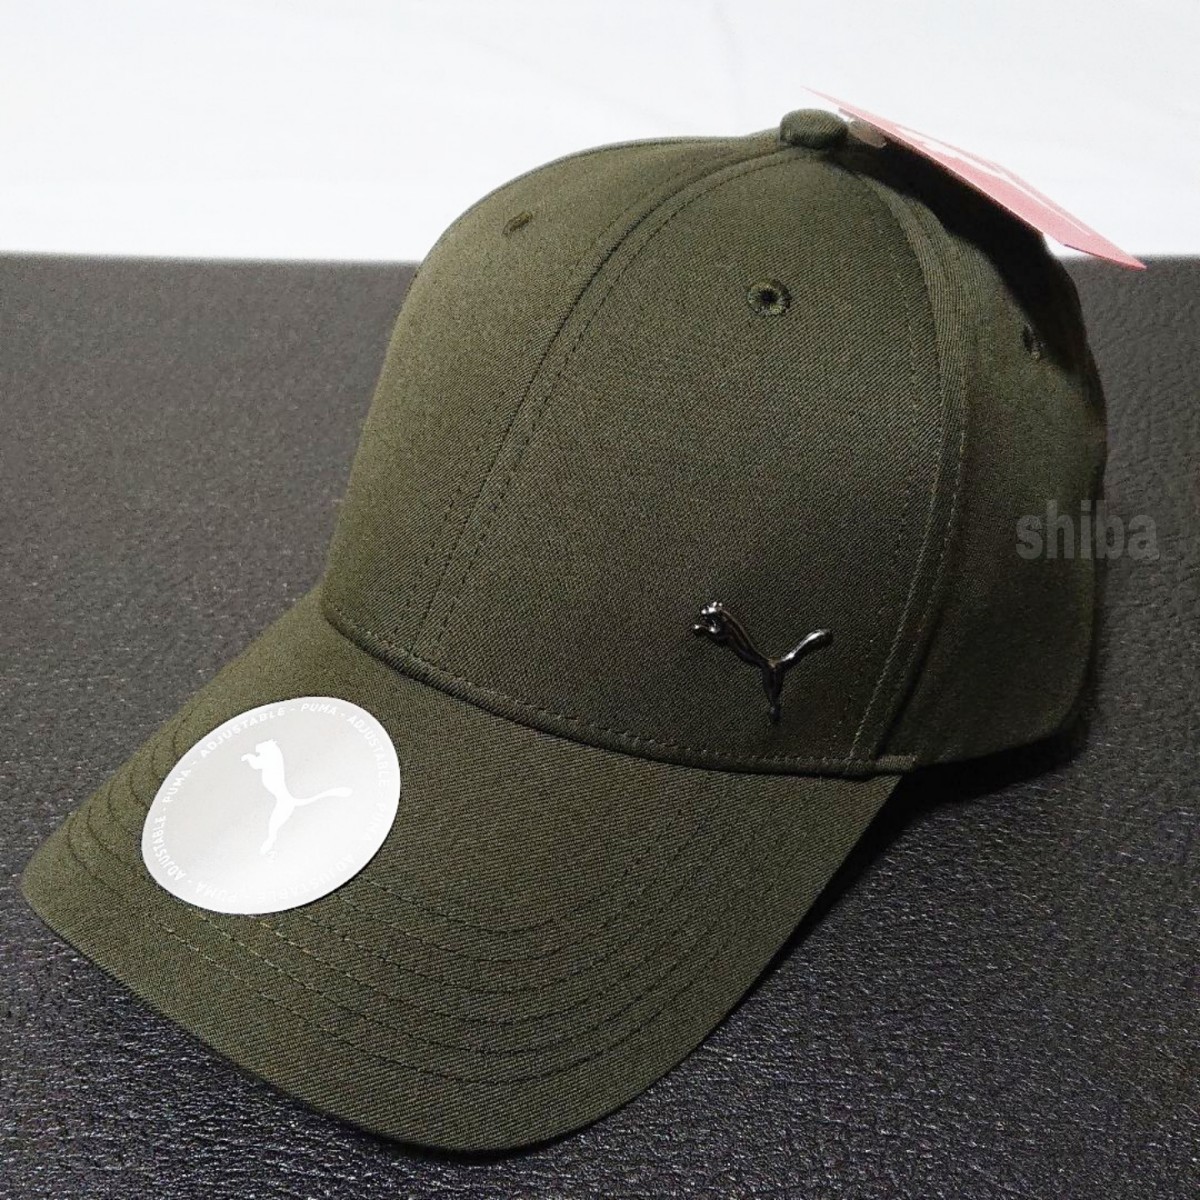 PUMA プーマ キャップ 帽子 カーキ グリーン 緑 海外モデル メタルキャットキャップ ユニセックス ワンサイズ フリーサイズ